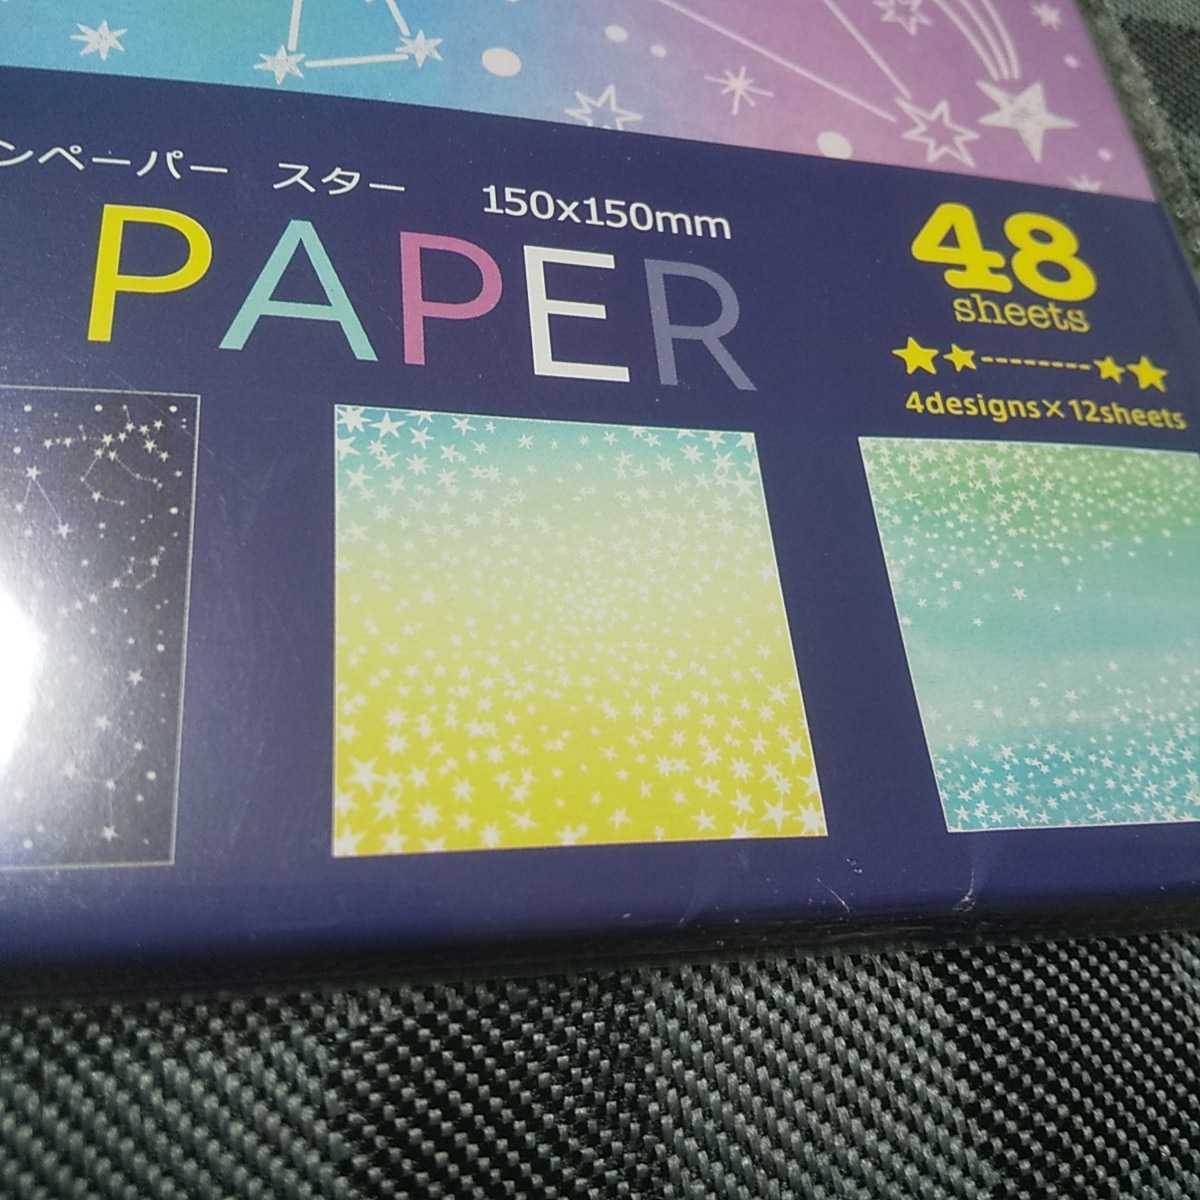  нераспечатанный дизайн бумага 150mm150mm украшение упаковка и т.п. бесплатная доставка возвращение денег с гарантией оригами 